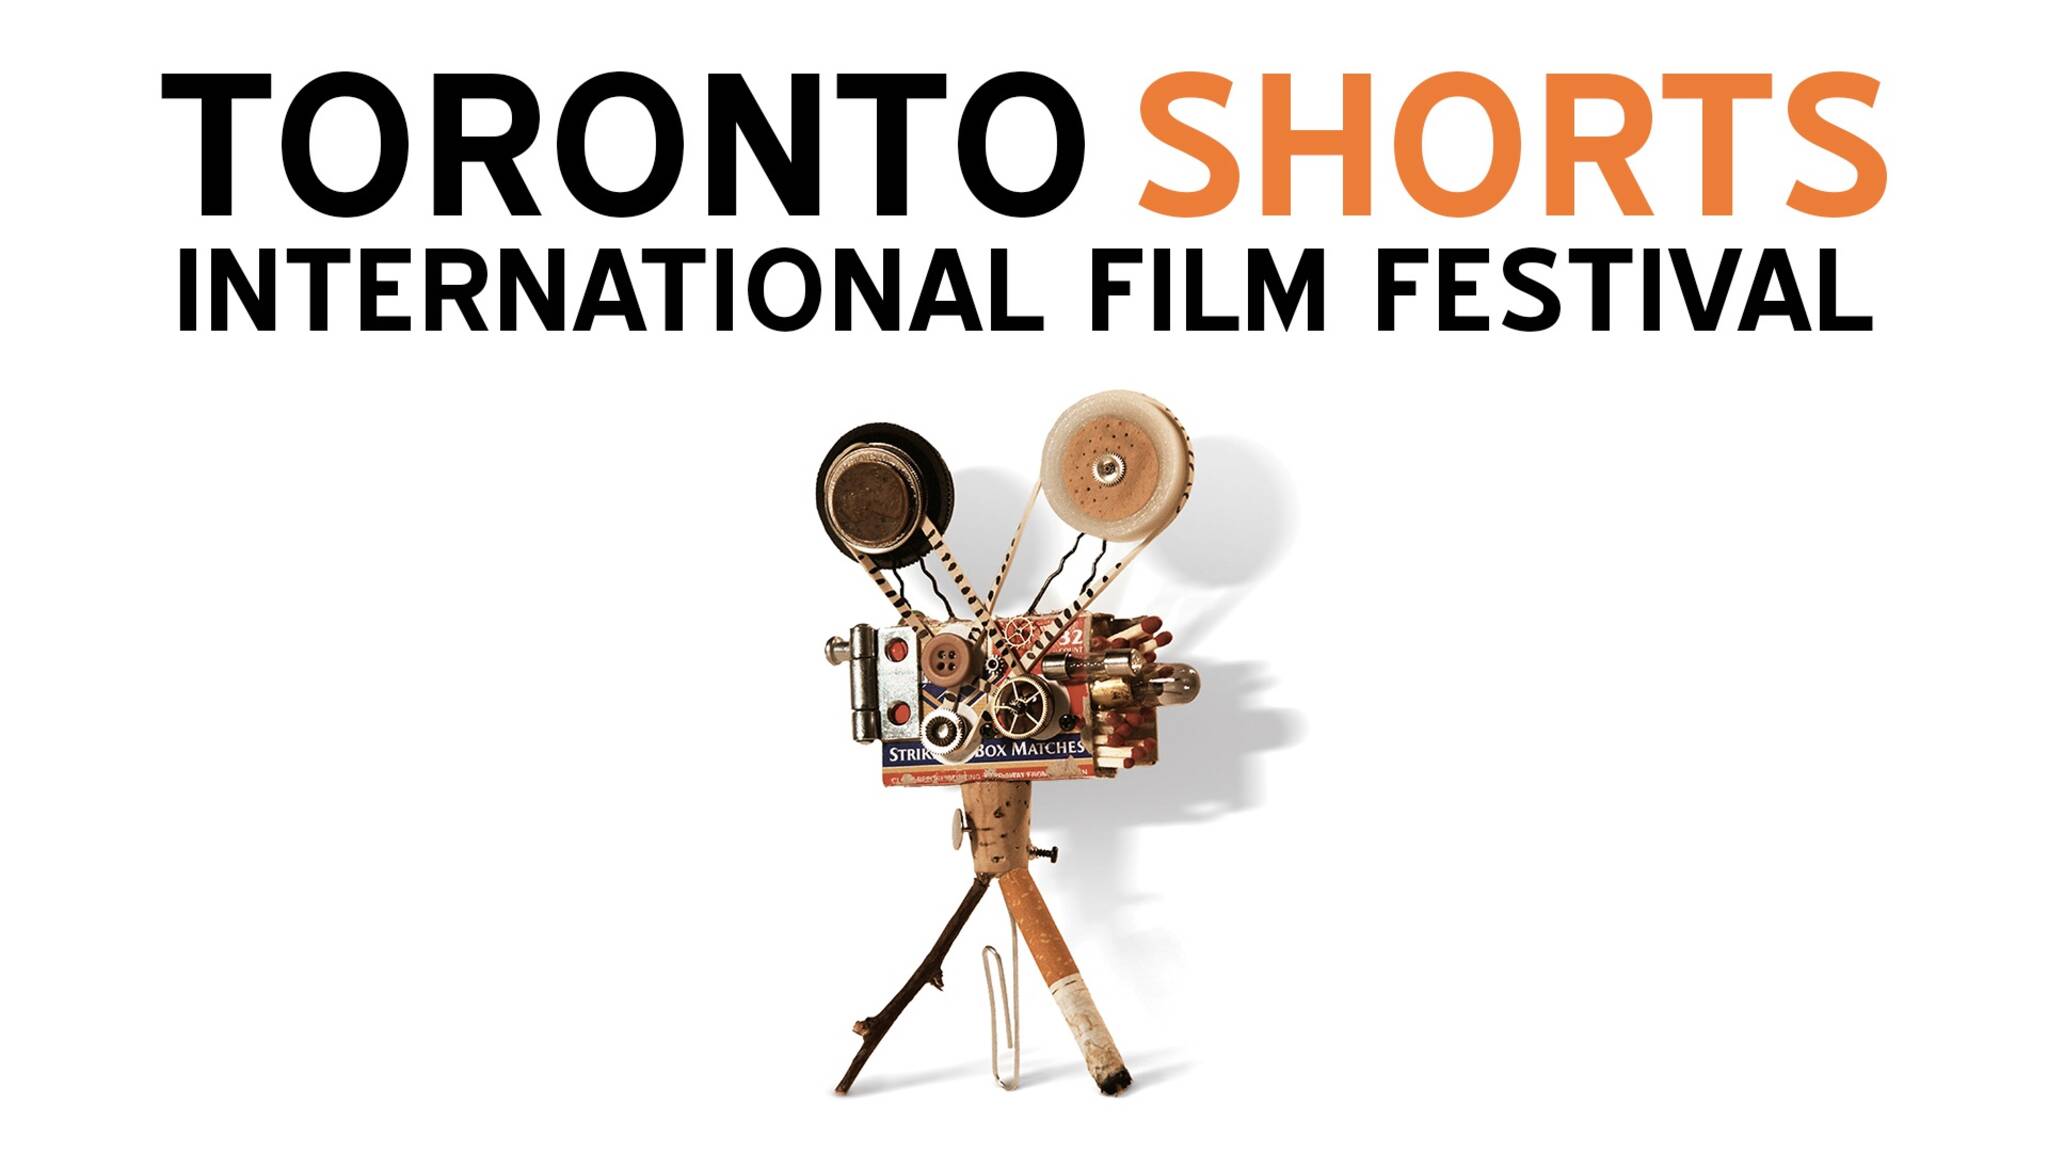 Toronto Shorts International Film Festival